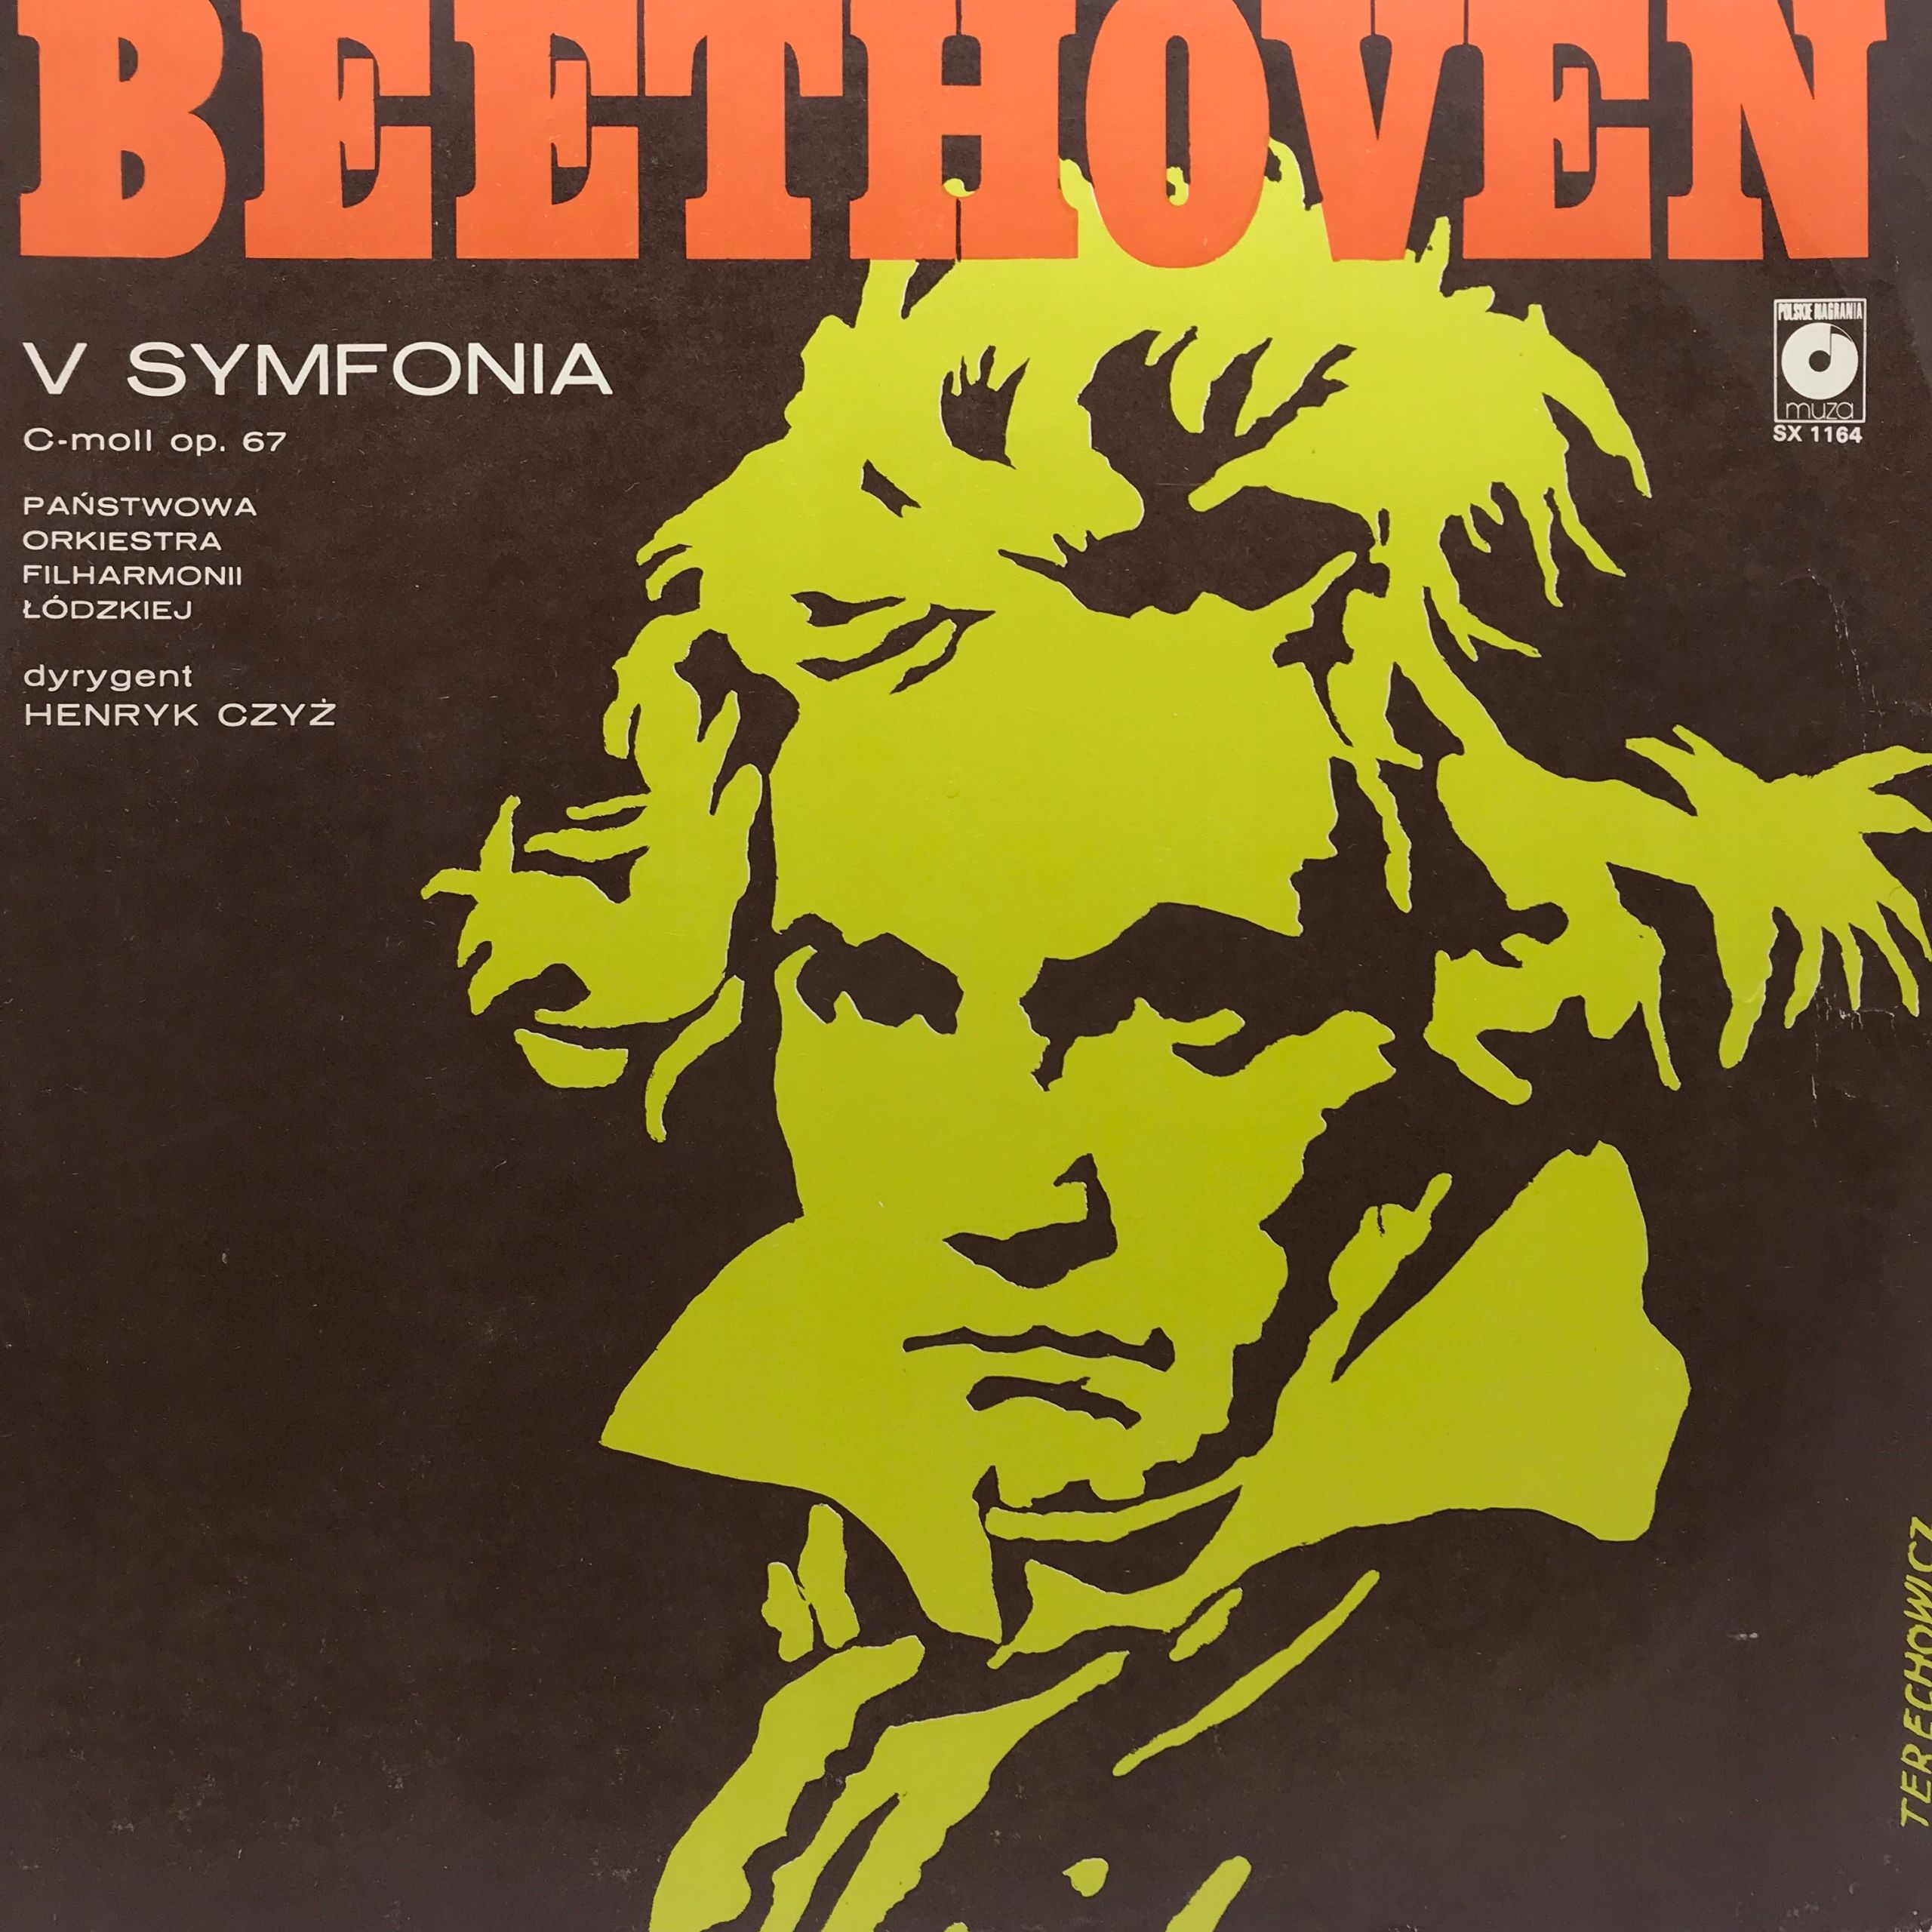 Winyl - Ludwig van Beethoven - V Symfonia C-Moll